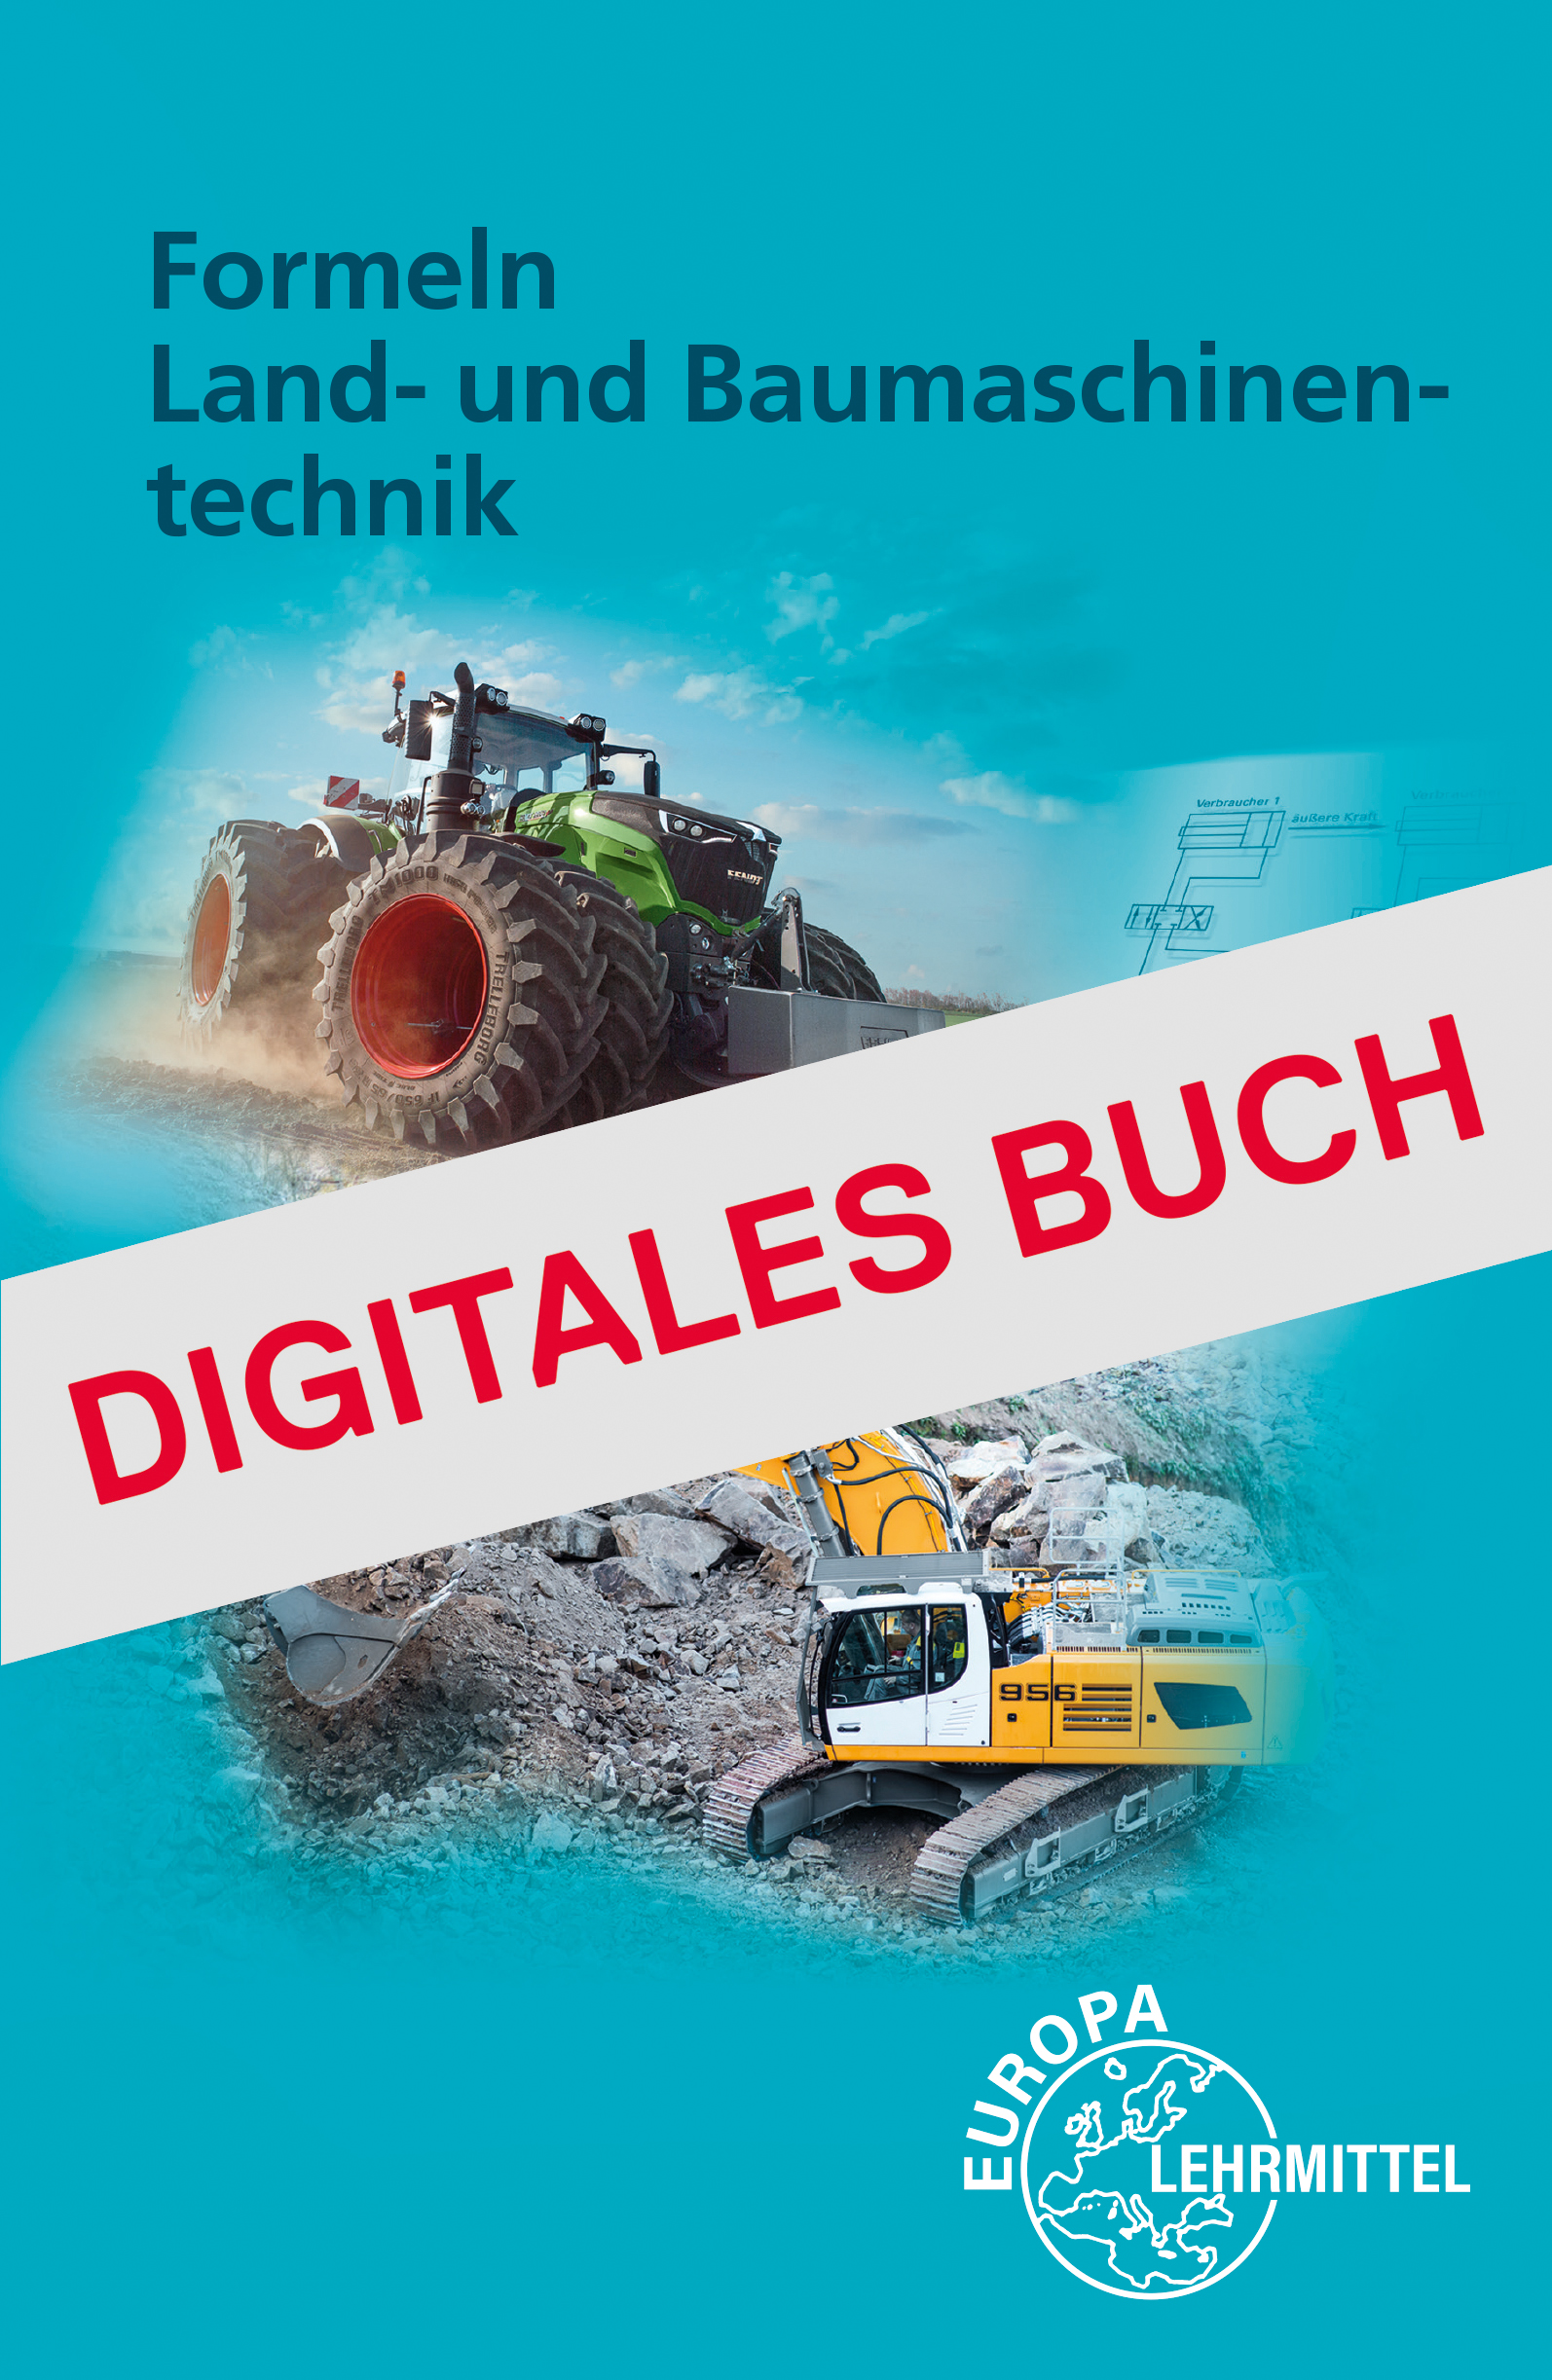 Formeln Land- und Baumaschinentechnik - Digitales Buch